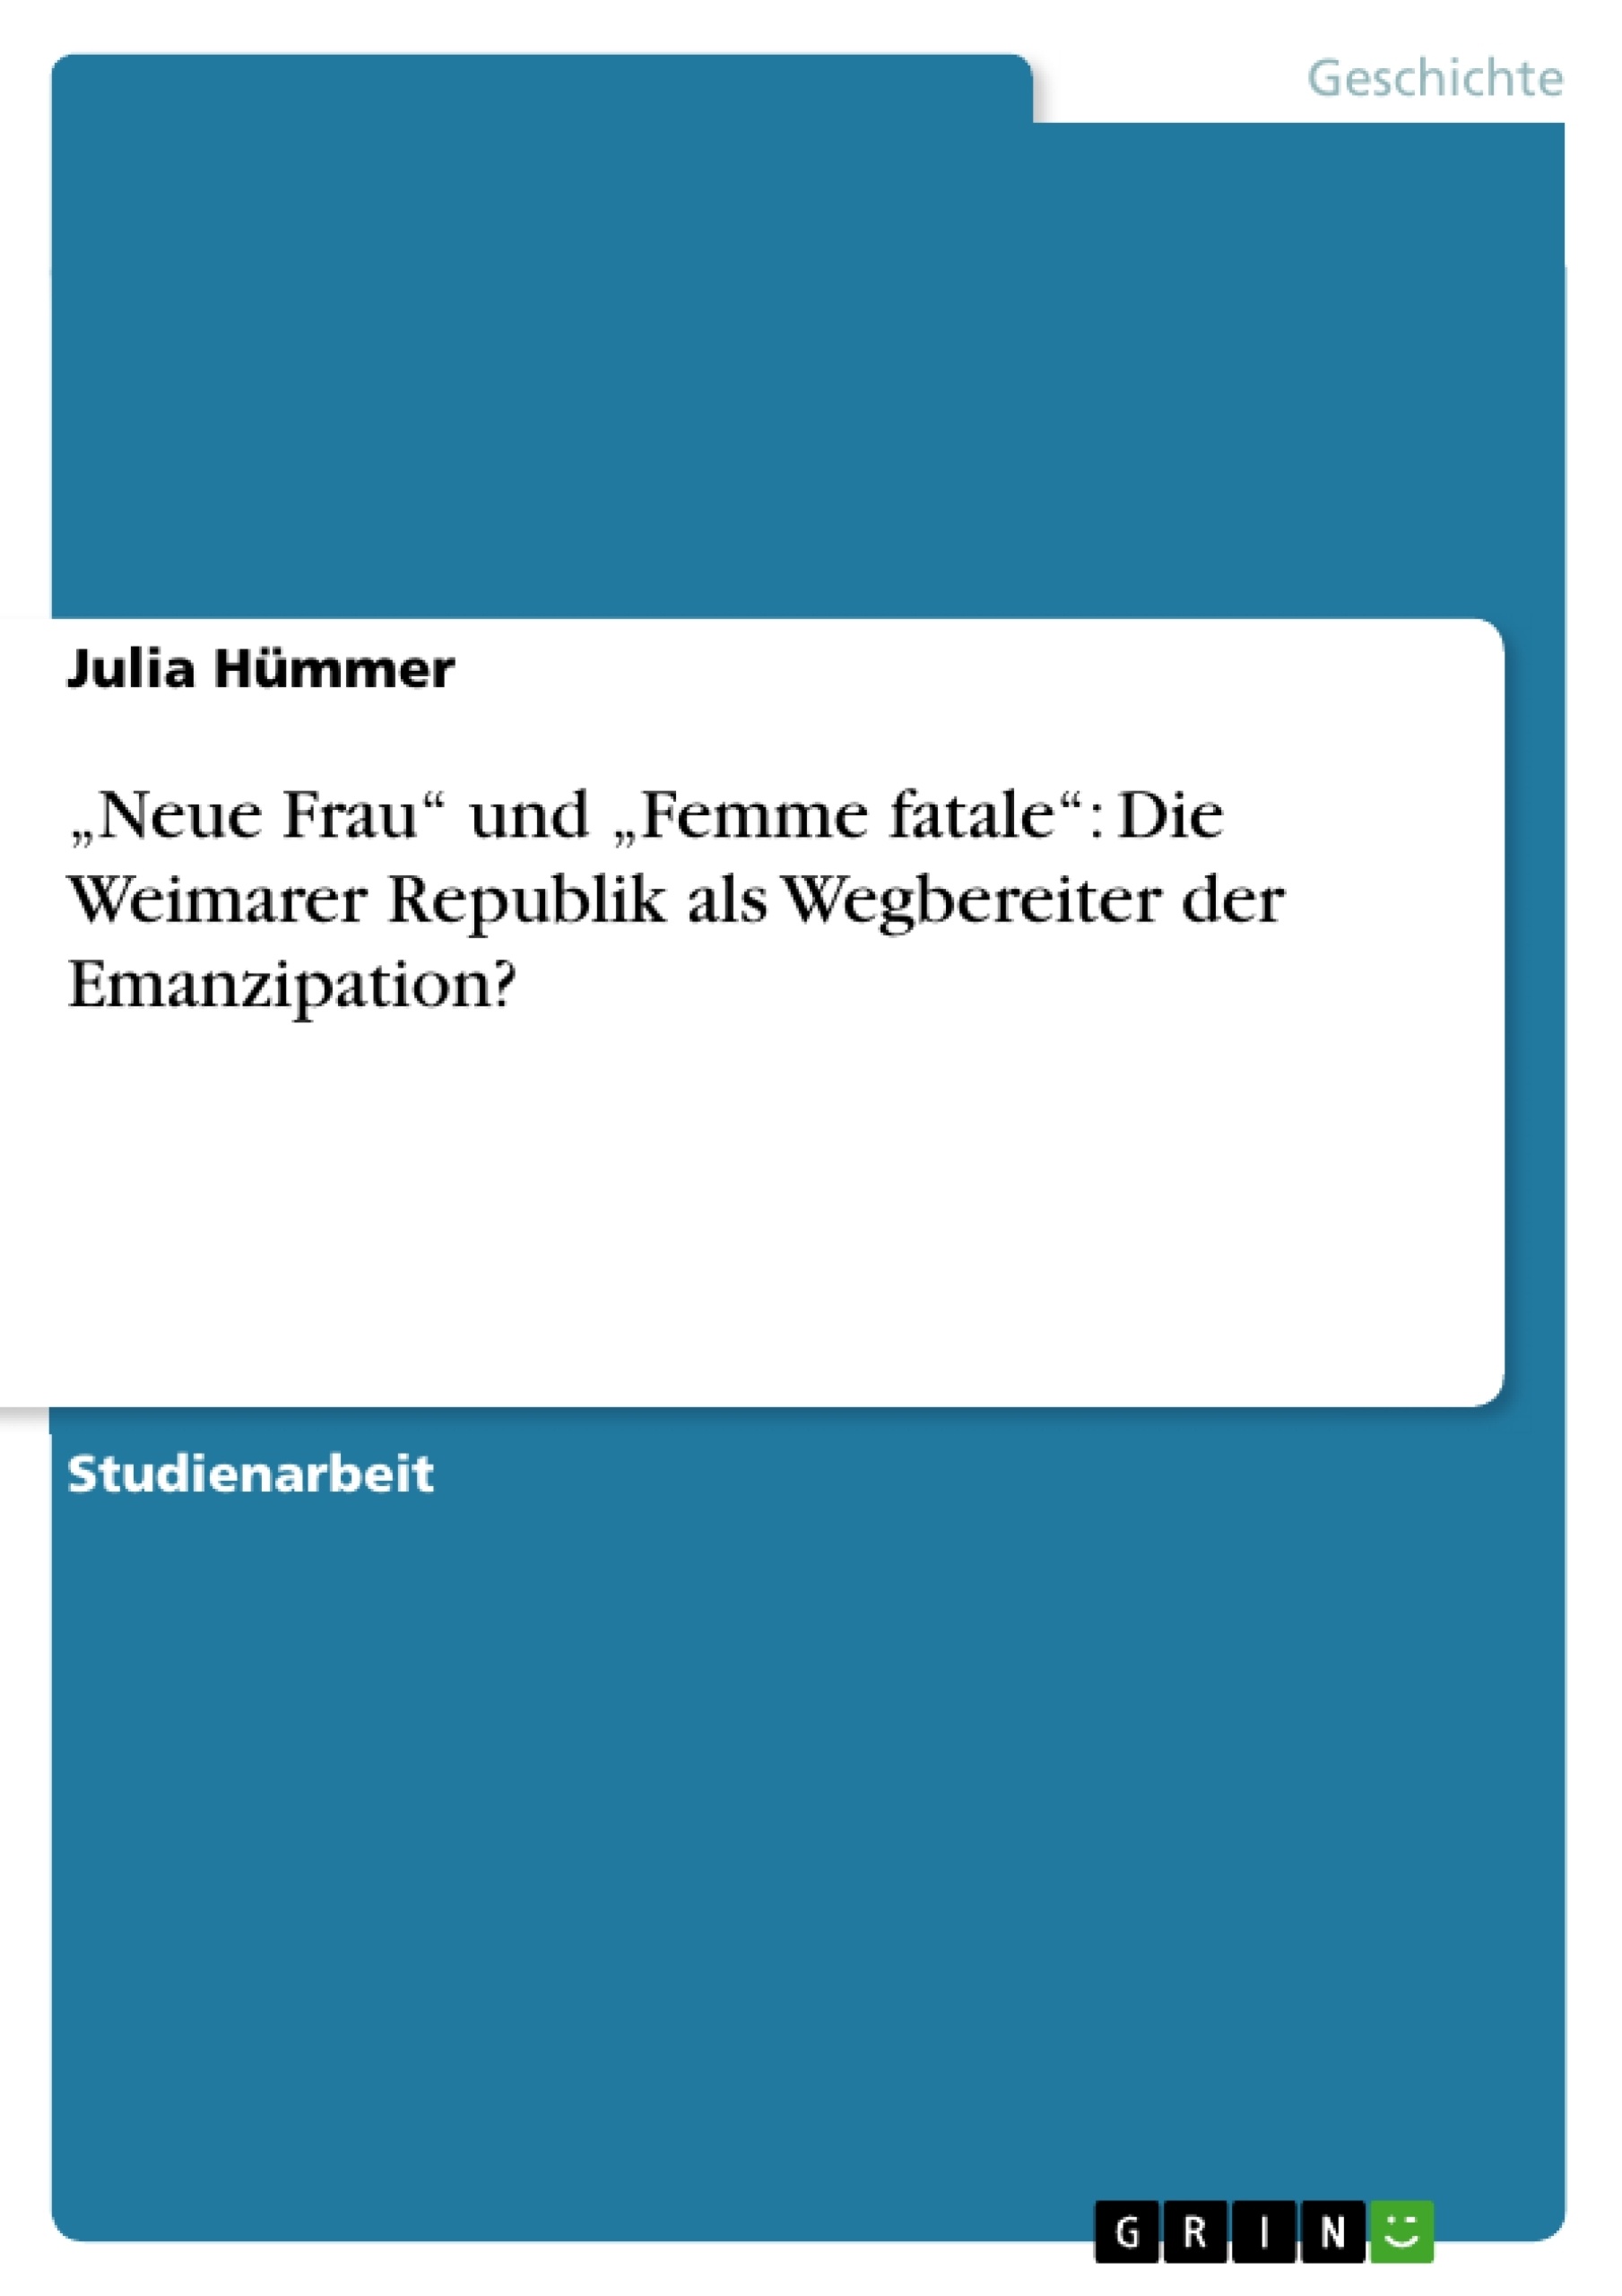 Title: „Neue Frau“ und „Femme fatale“: Die Weimarer Republik als Wegbereiter der Emanzipation?